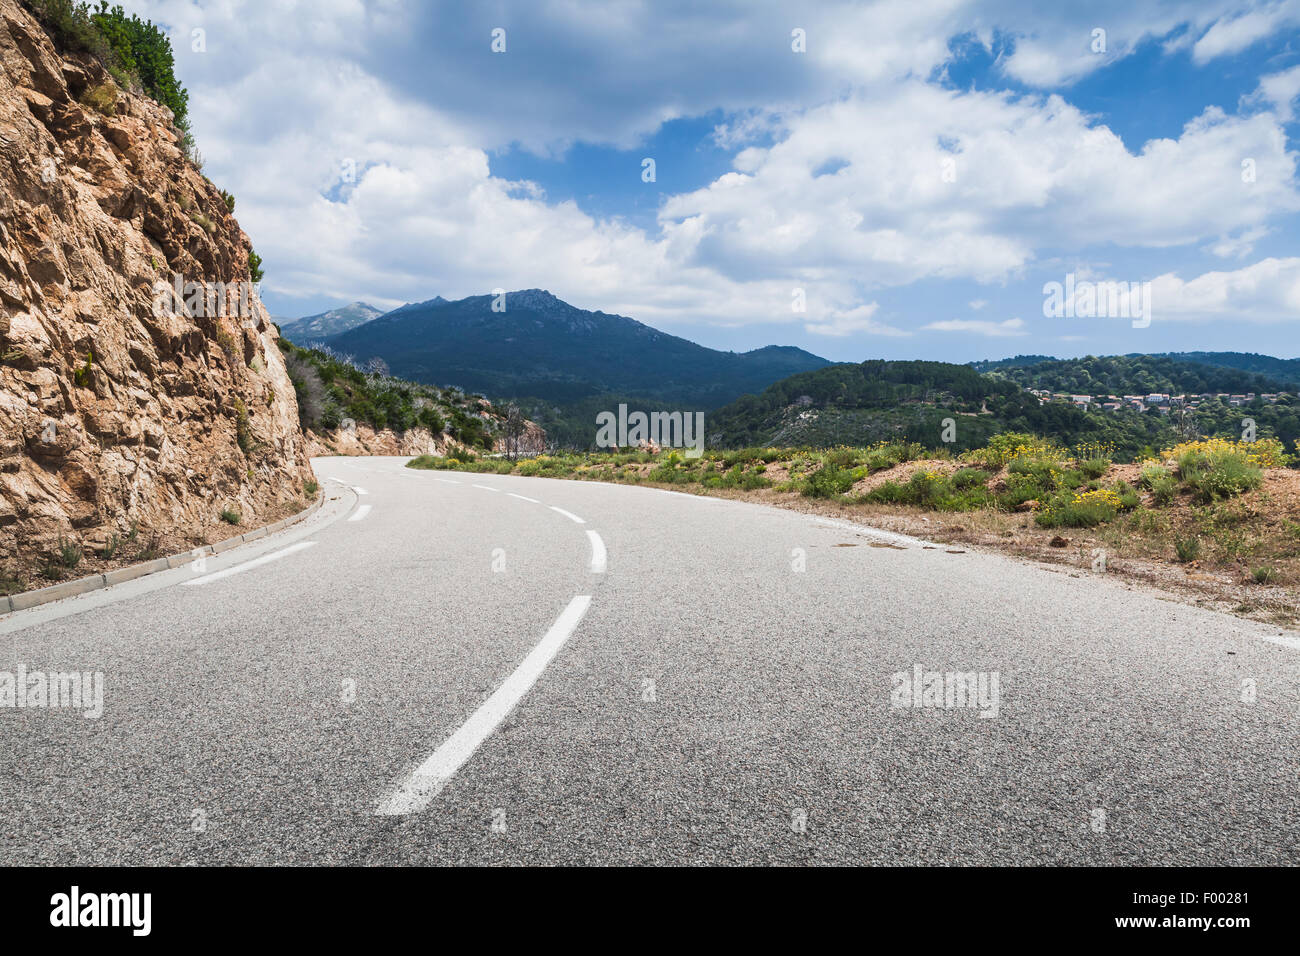 Girando su strada di montagna con una linea di demarcazione su asfalto, il paesaggio della Corsica, Francia Foto Stock